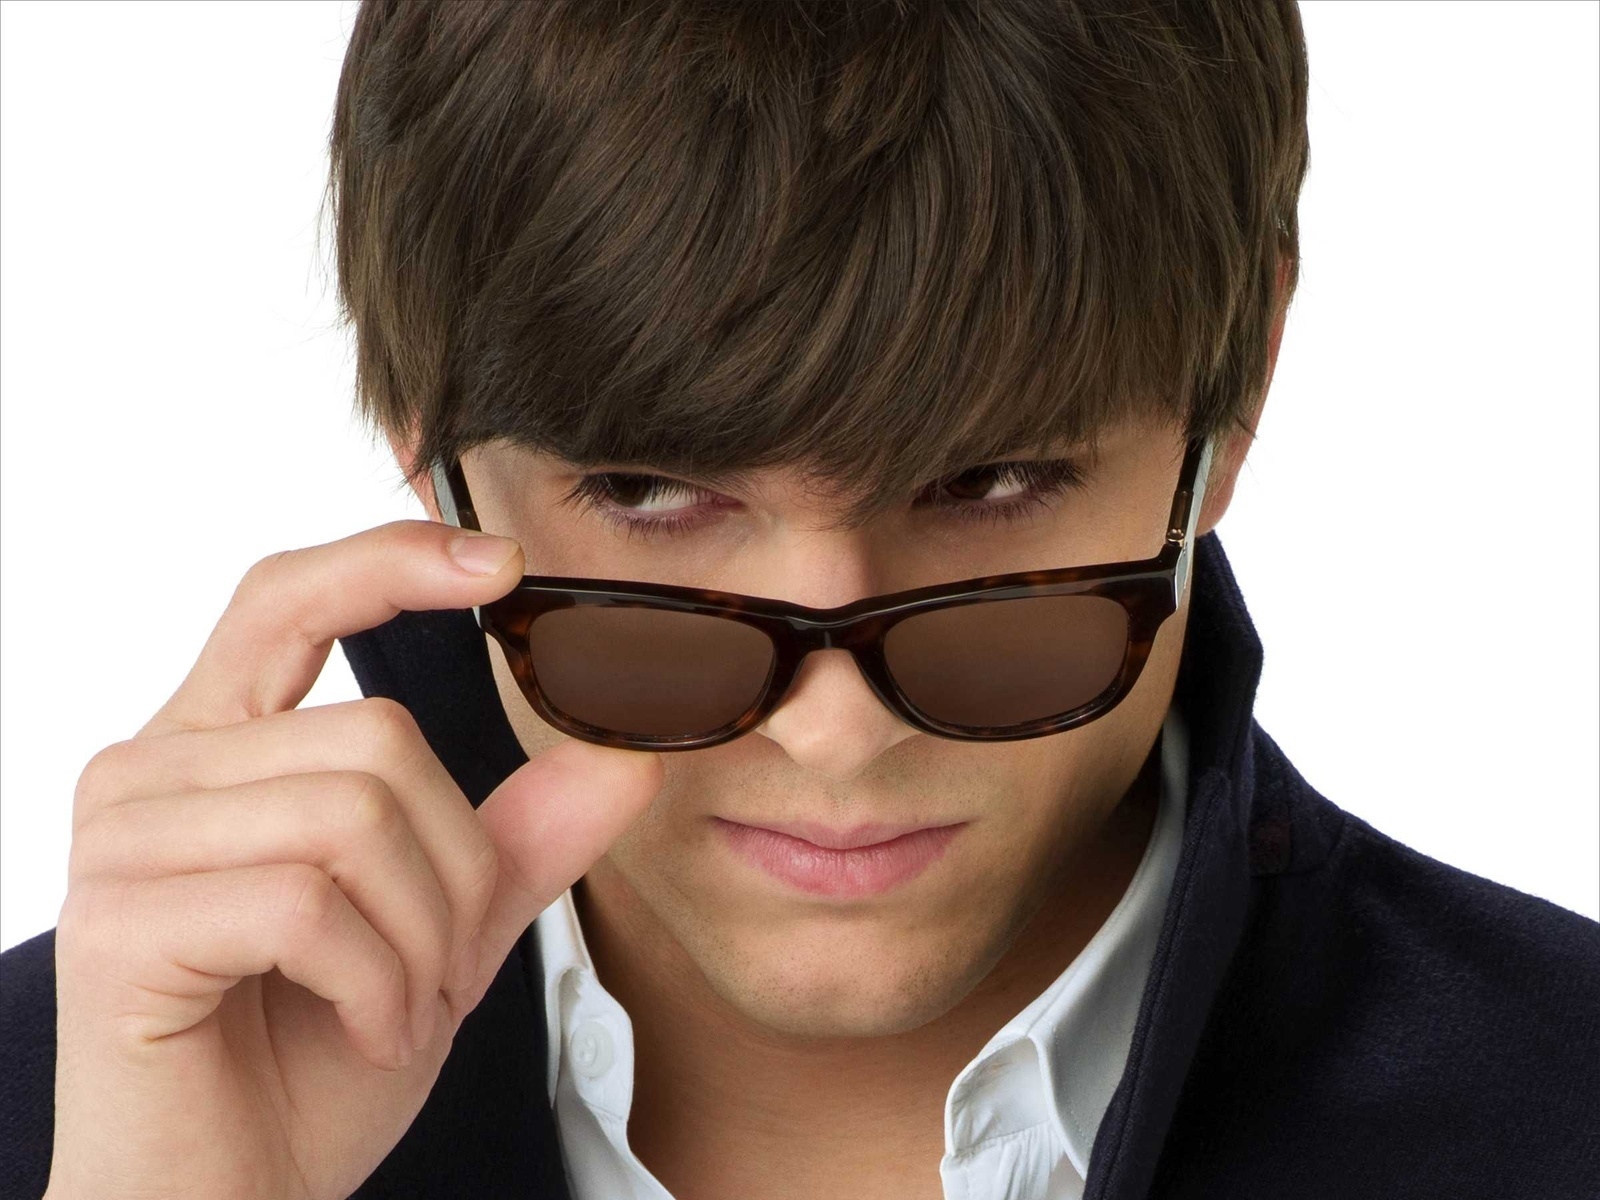 Ashton Kutcher with Sunglasses for 1600 x 1200 resolution